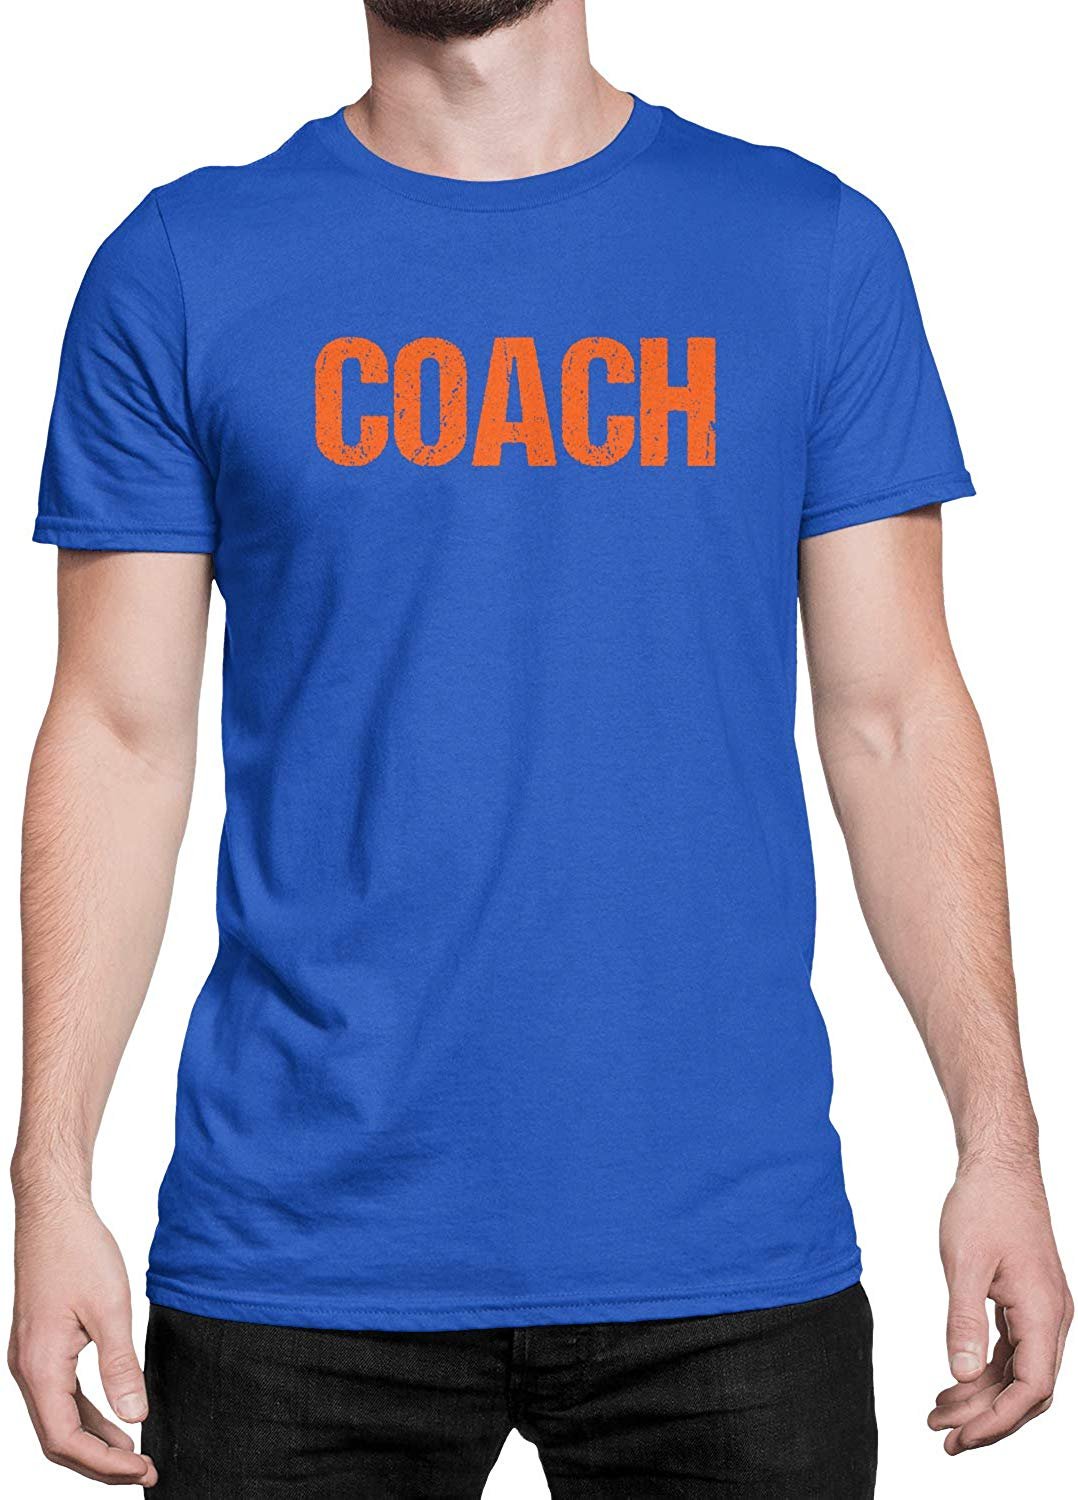 Coach T-Shirt Sports Coaching Tee Shirt (Royal & Oange, Distressed)